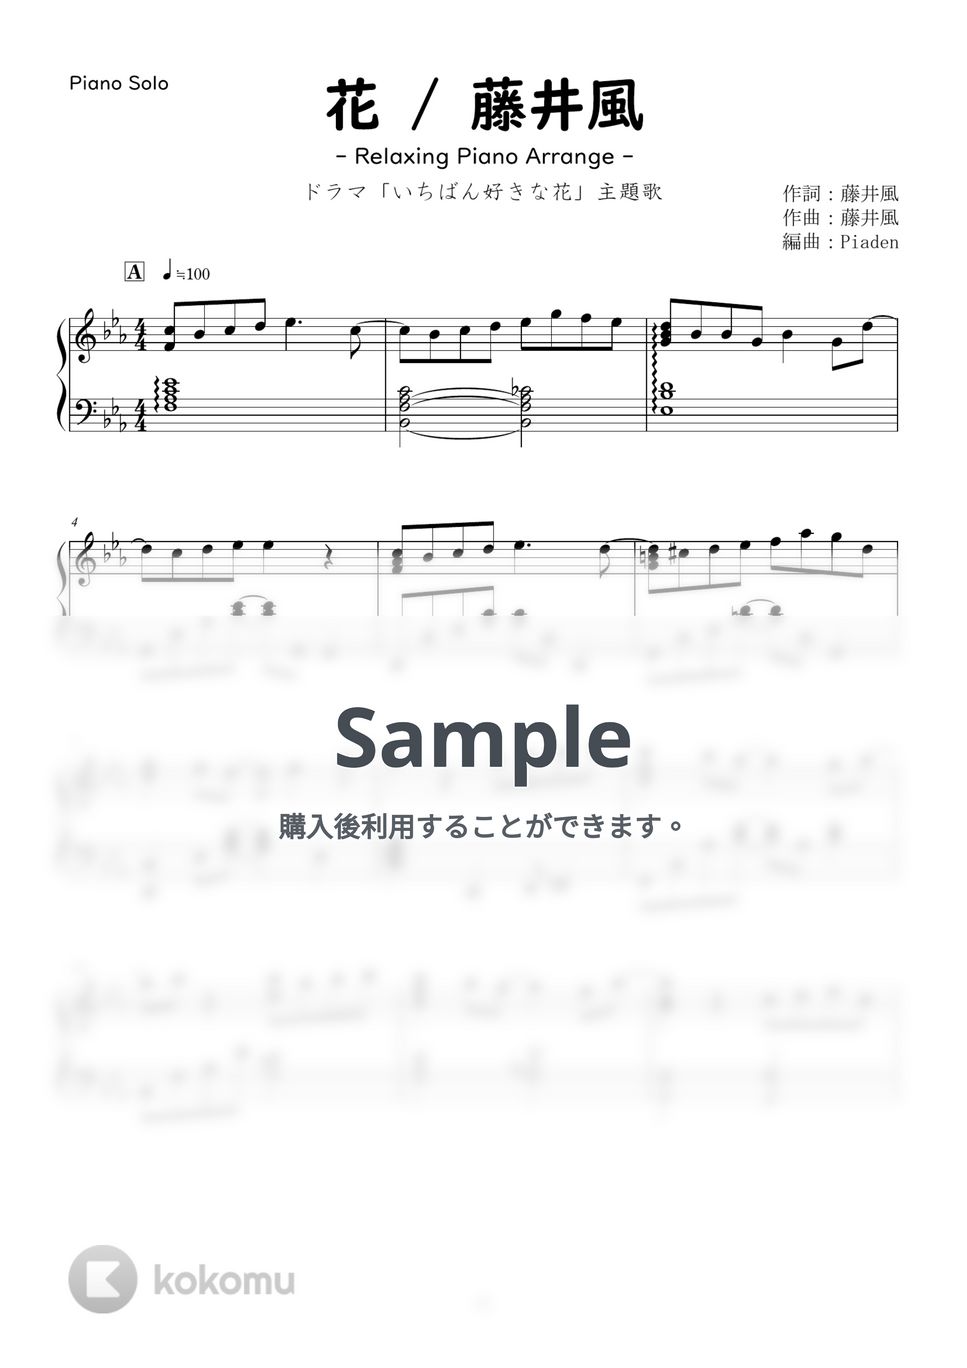 藤井風 - 花 [癒しピアノアレンジ] (癒しピアノ / 初～中級 / ピアノソロ) by Piaden